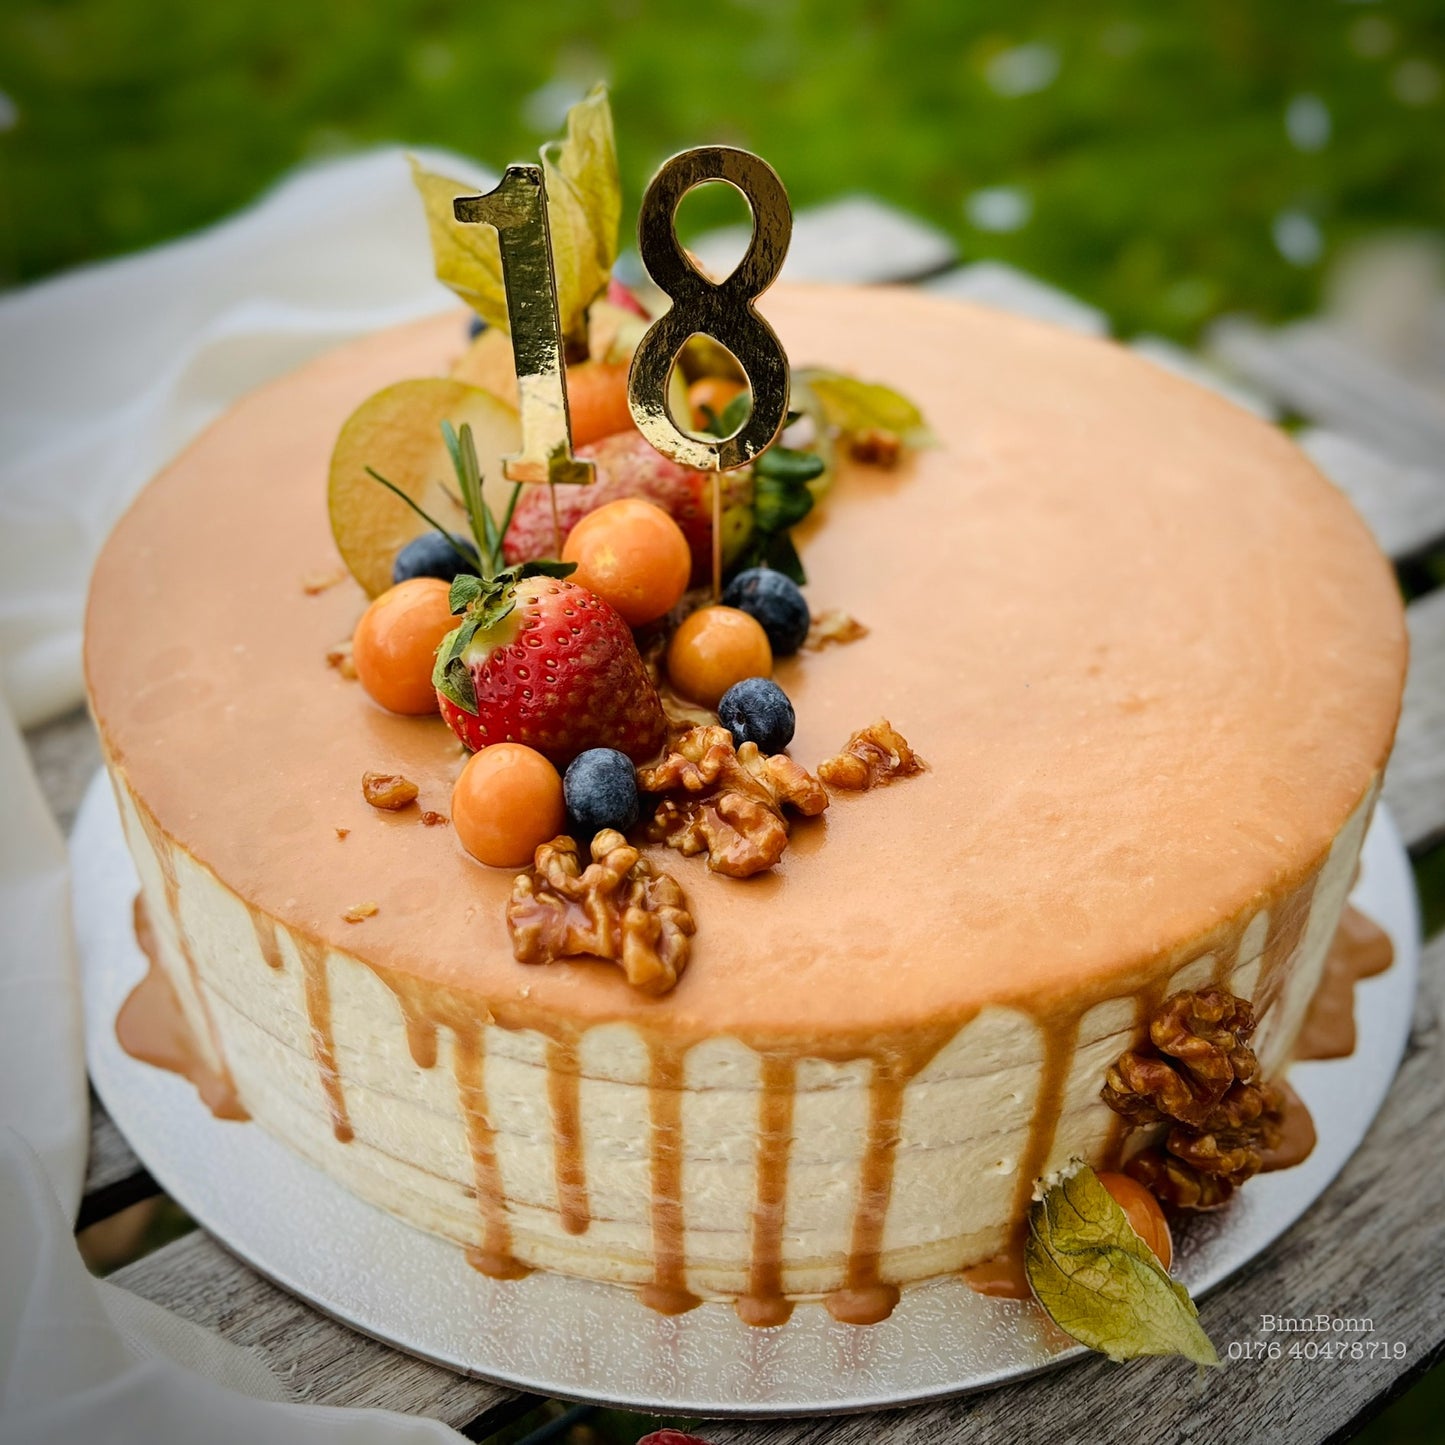 27. Torte "Caramel Love" mit Karamellsauce und verschiedenen frischen Früchten 26 cm